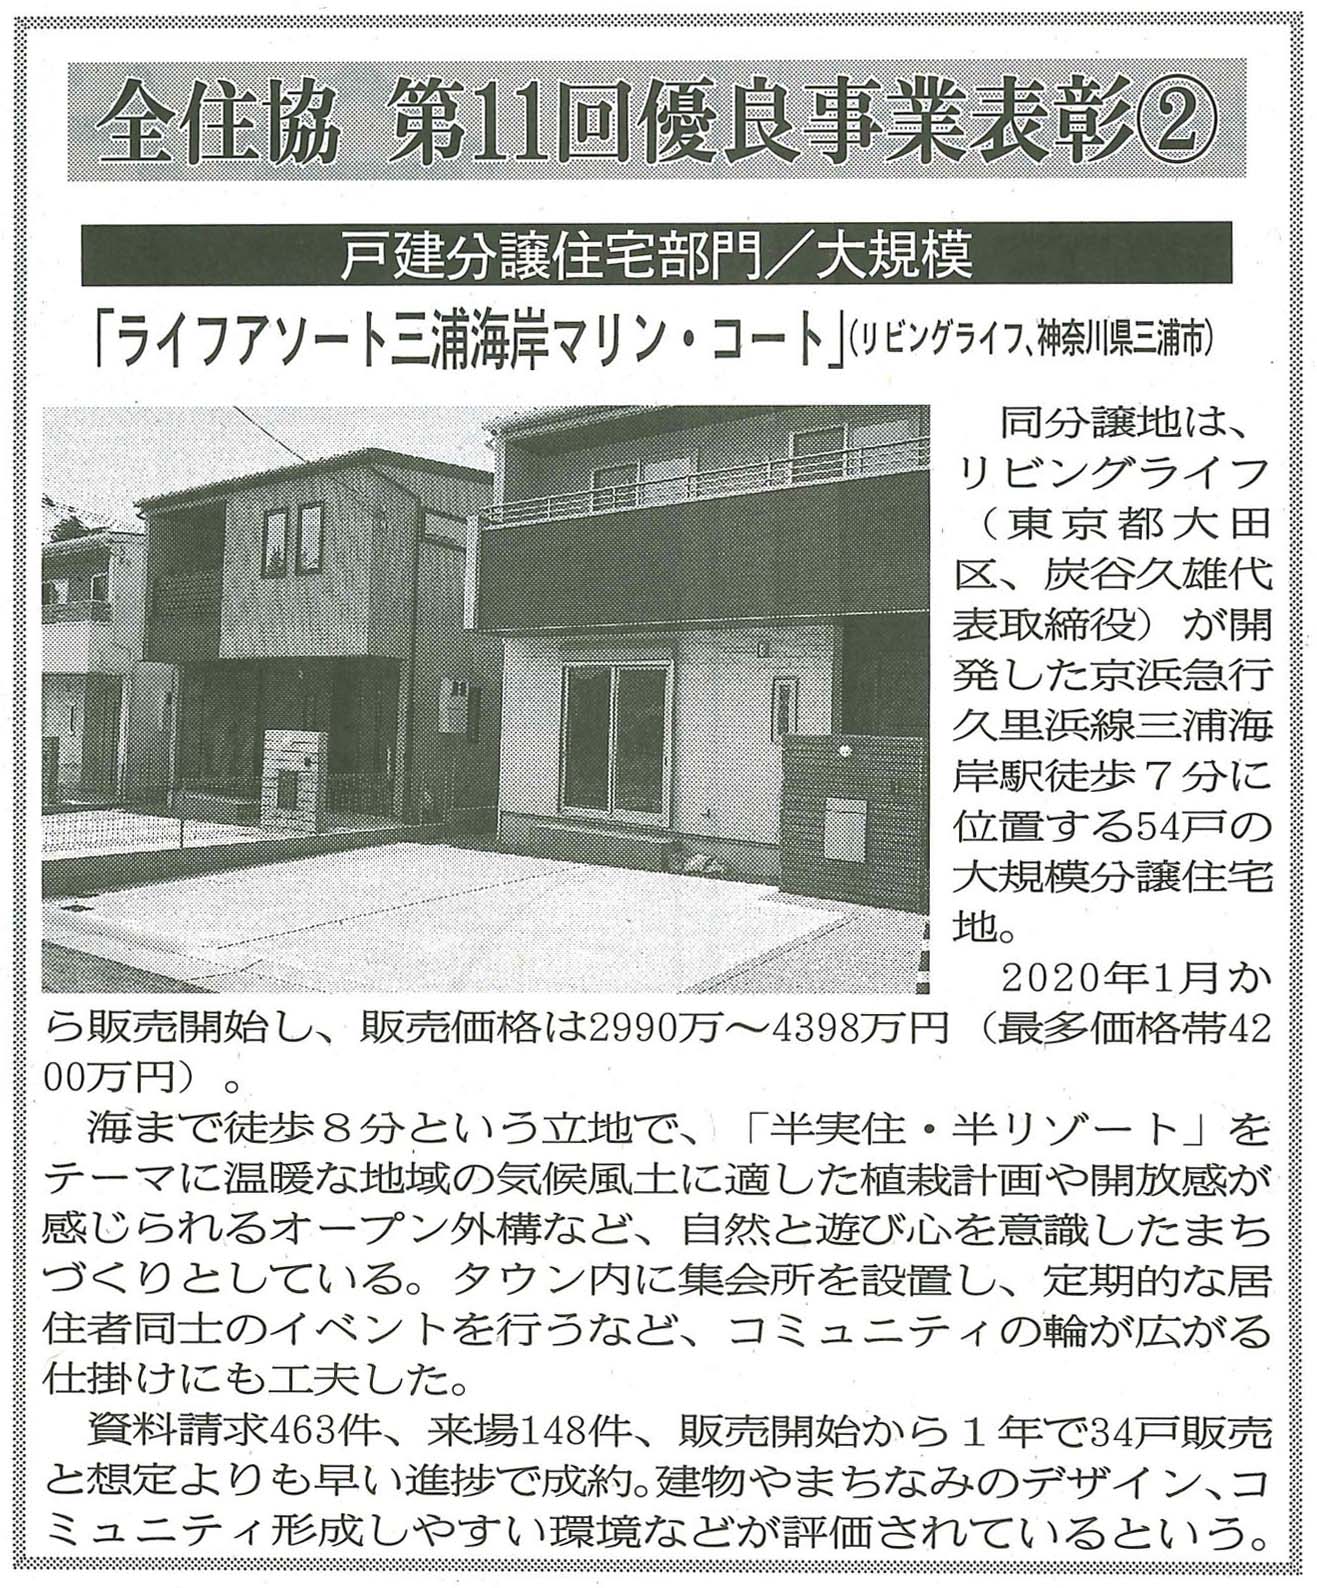 『週刊住宅 7/5号』にライフアソート三浦海岸の「全住協 第11回優良事業表彰」の記事が掲載されました。